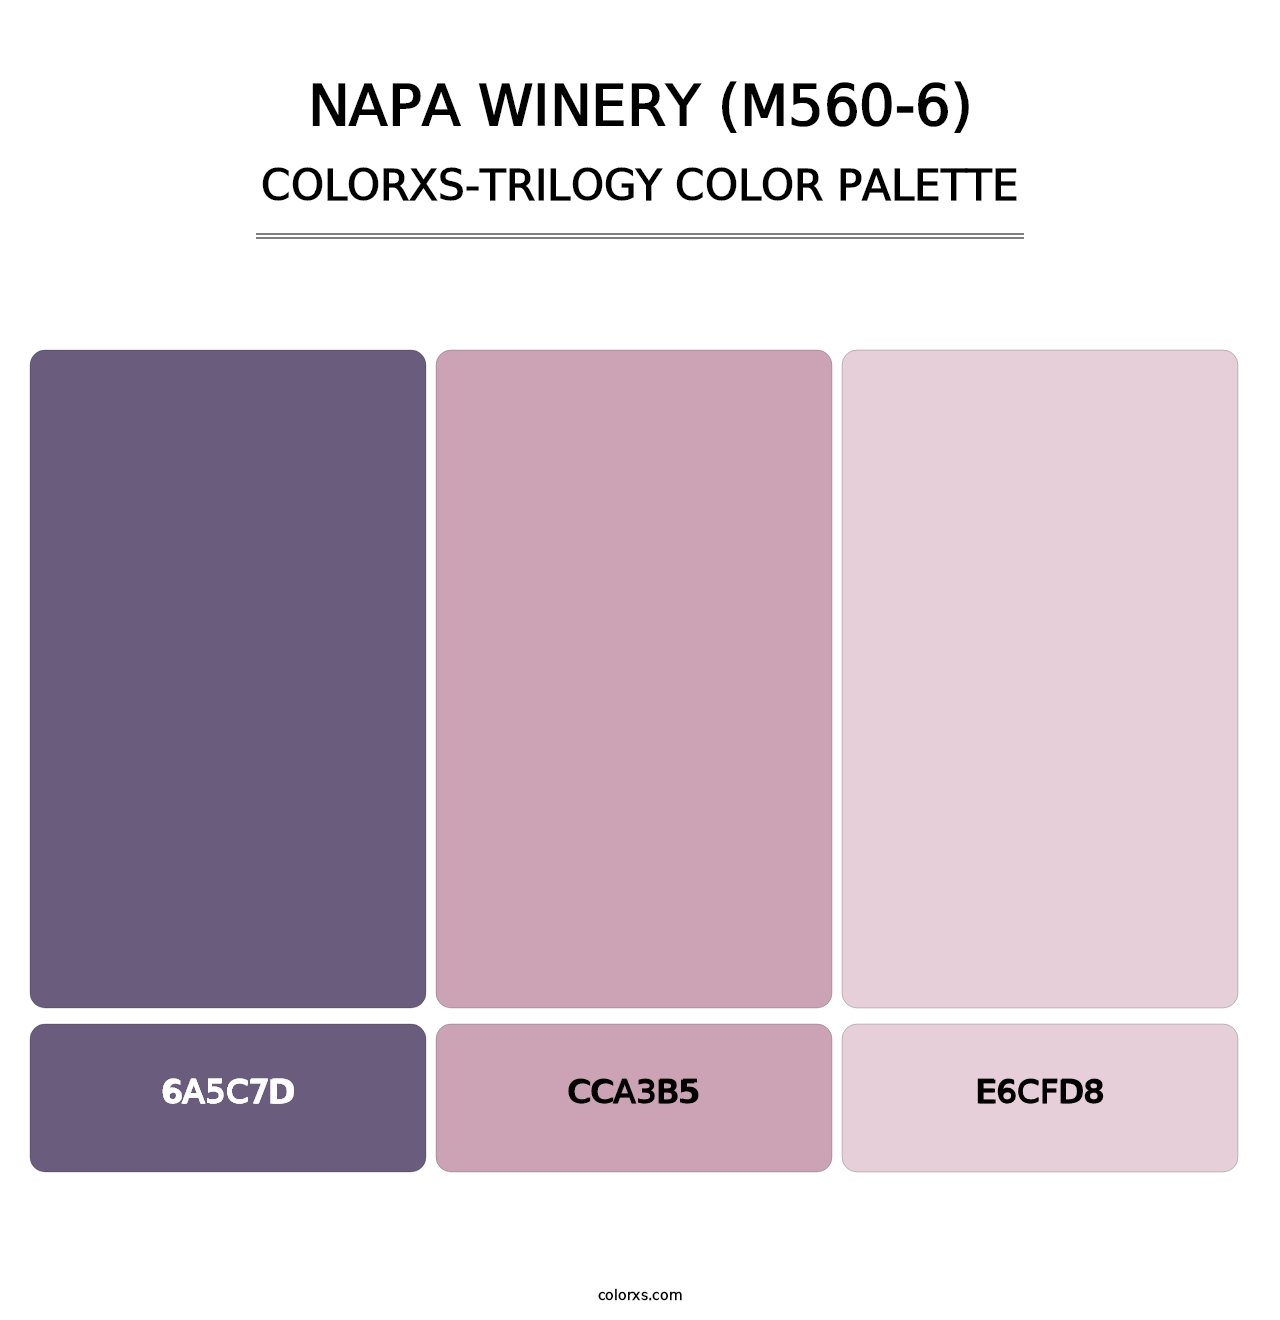 Napa Winery (M560-6) - Colorxs Trilogy Palette